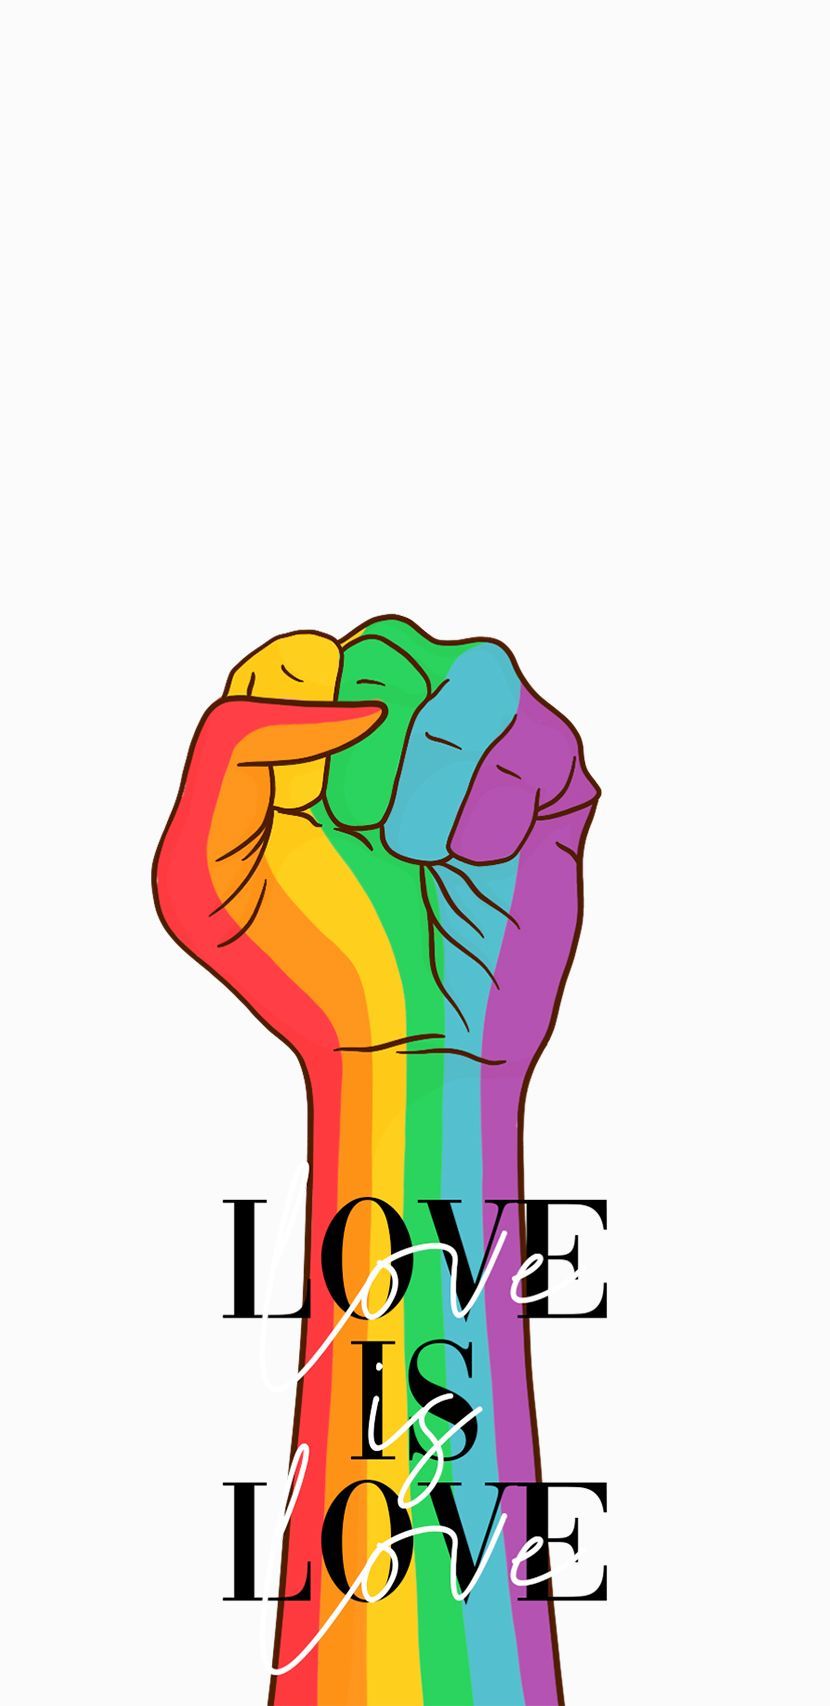 Nụ Hôn Son Cầu Vồng Trên Nền Đen Biểu Tượng Cộng Đồng Lgbt Gay Kiêu Hãnh  Vector Minh Họa Dấu Ấn Của Đôi Môi Ngày Quốc Tế Chống Lại Áp Phích  Homophobia